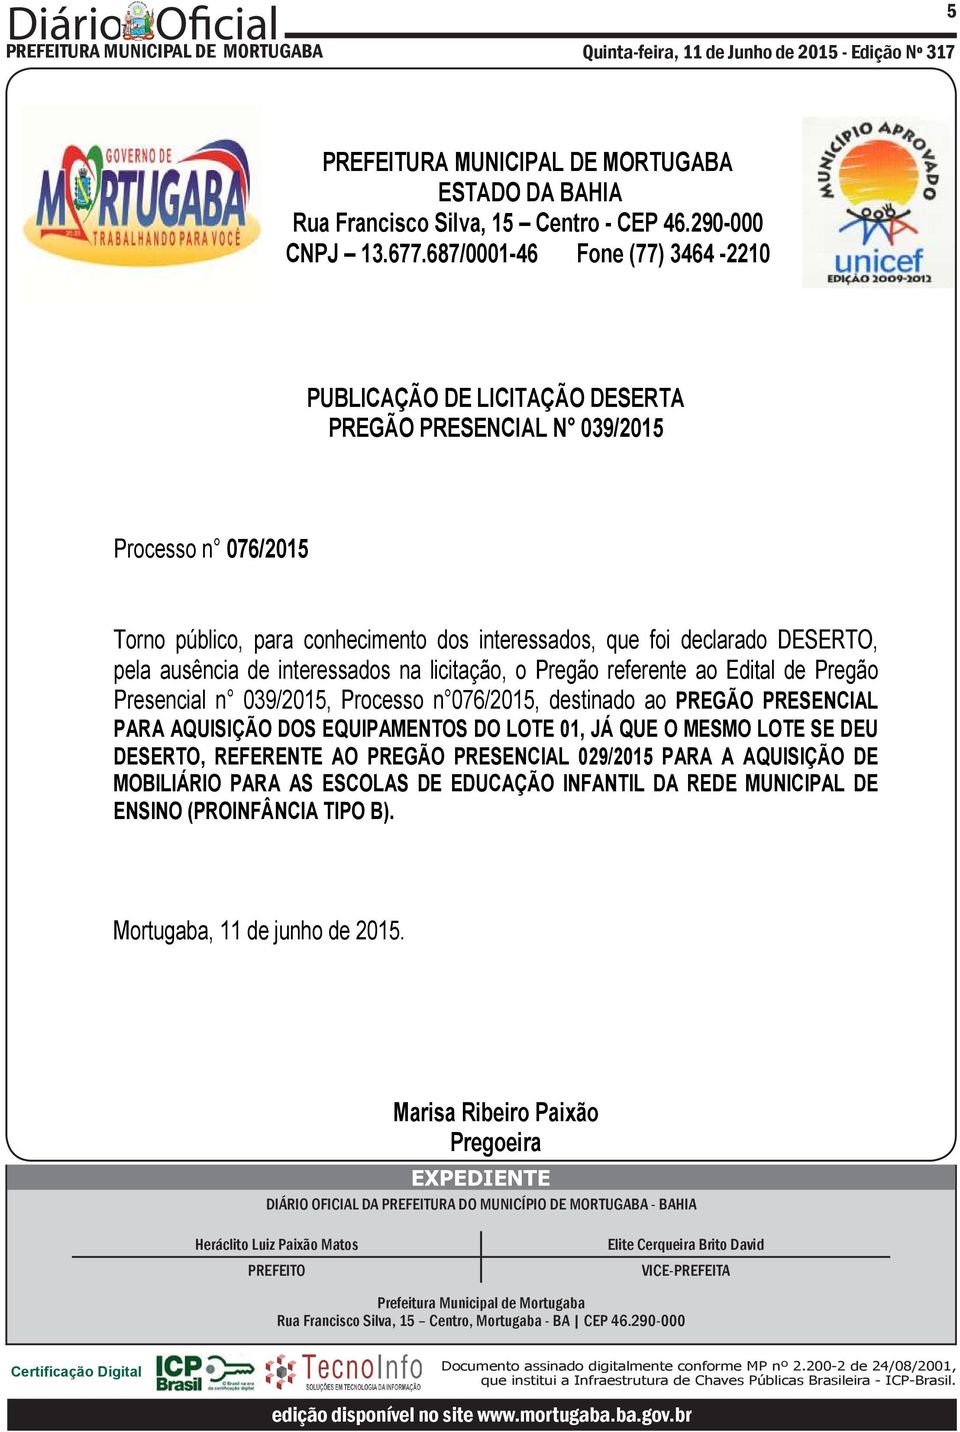 DESERTO, REFERENTE AO PREGÃO PRESENCIAL 029/2015 PARA A AQUISIÇÃO DE MOBILIÁRIO PARA AS ESCOLAS DE EDUCAÇÃO INFANTIL DA REDE MUNICIPAL DE ENSINO (PROINFÂNCIA TIPO B).